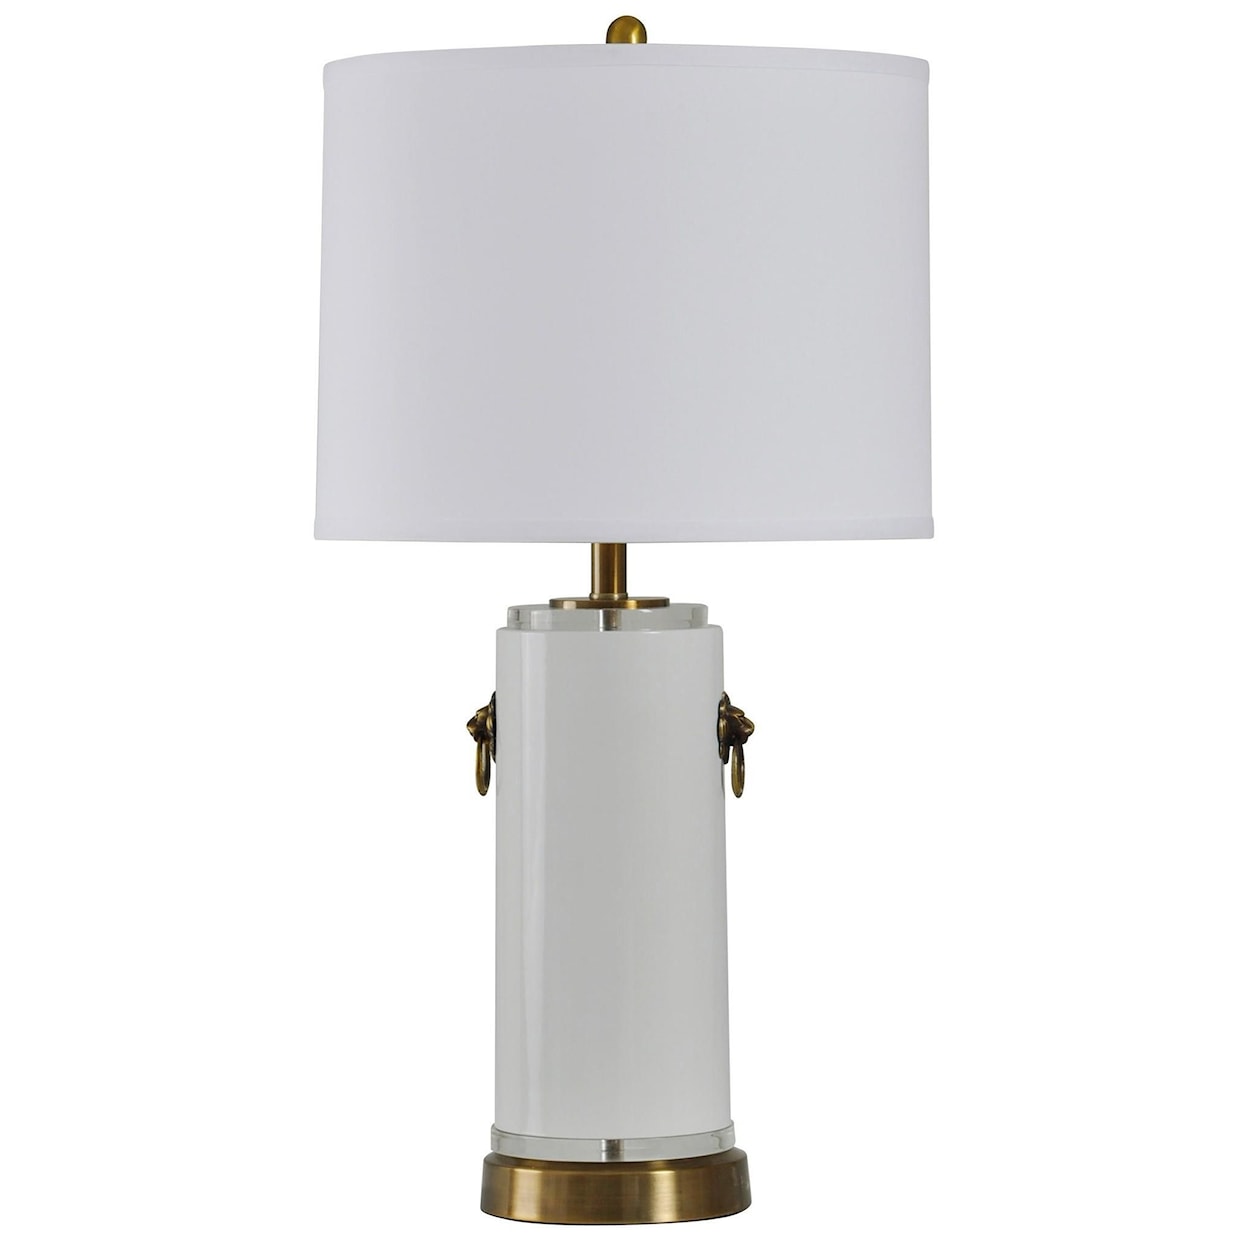 StyleCraft L310975 1 Table Lamp